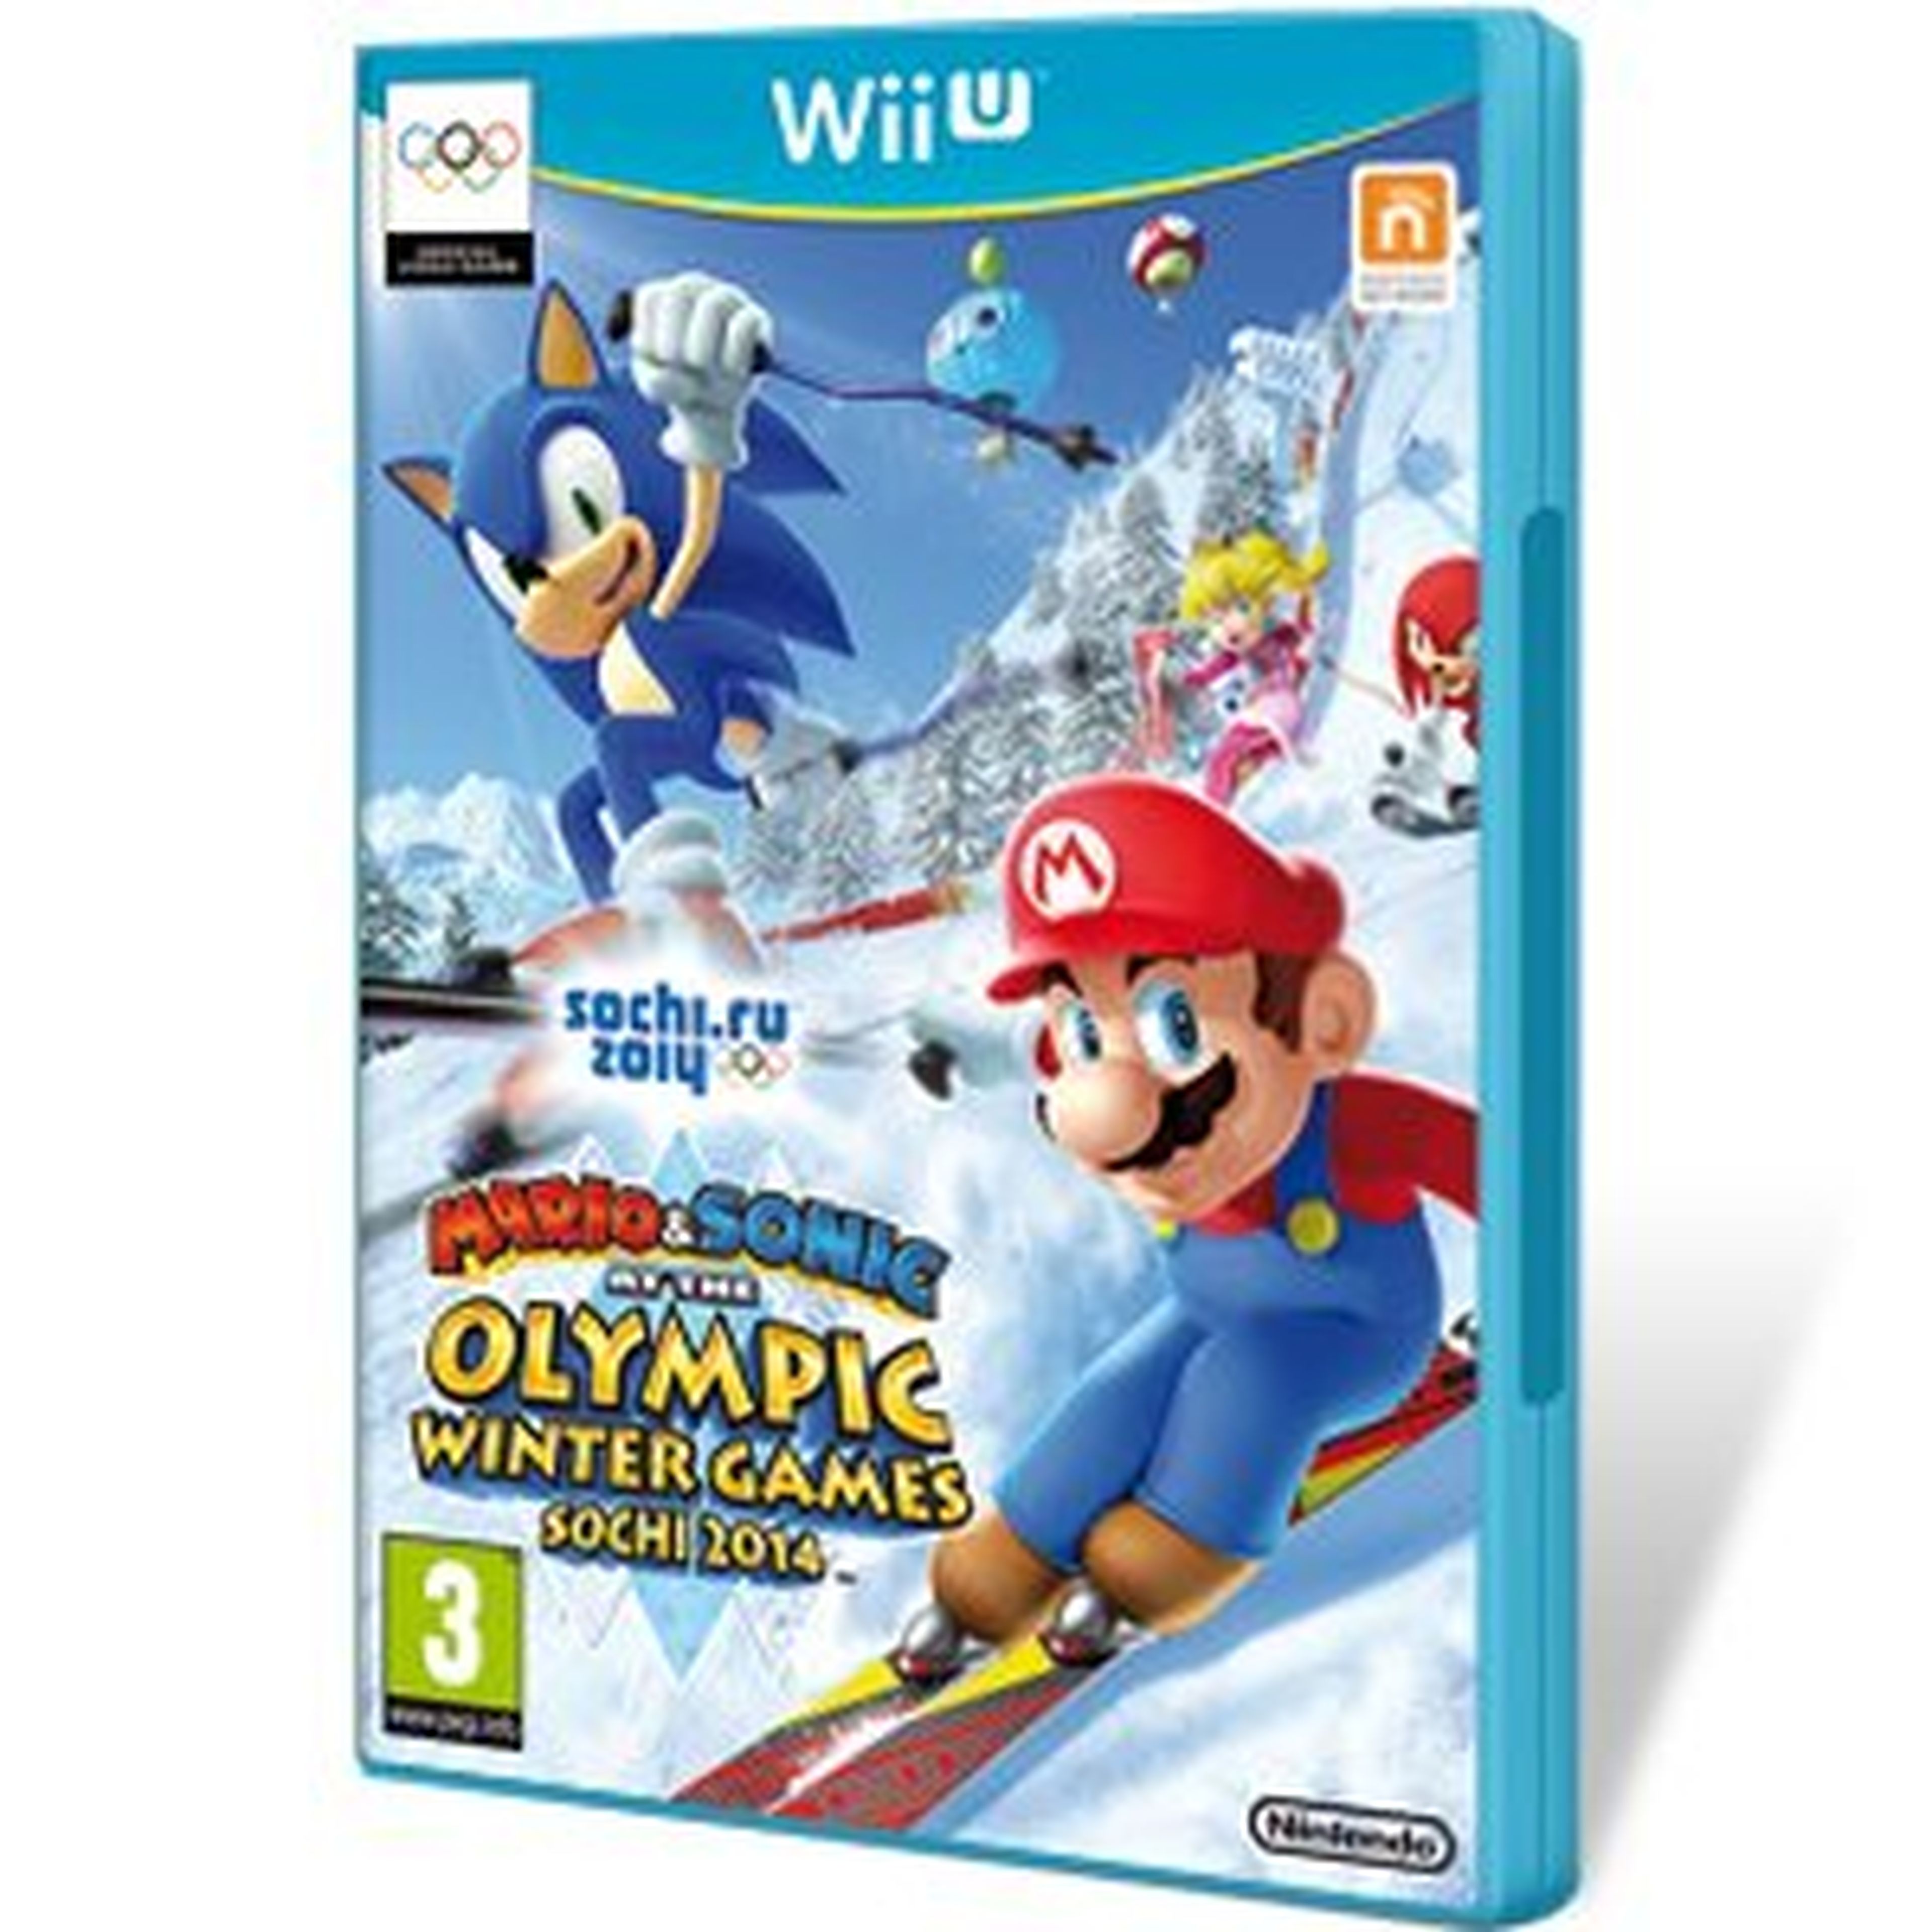 Mario & Sonic en los Juegos Olímpicos de Invierno Sochi 2014 para Wii U